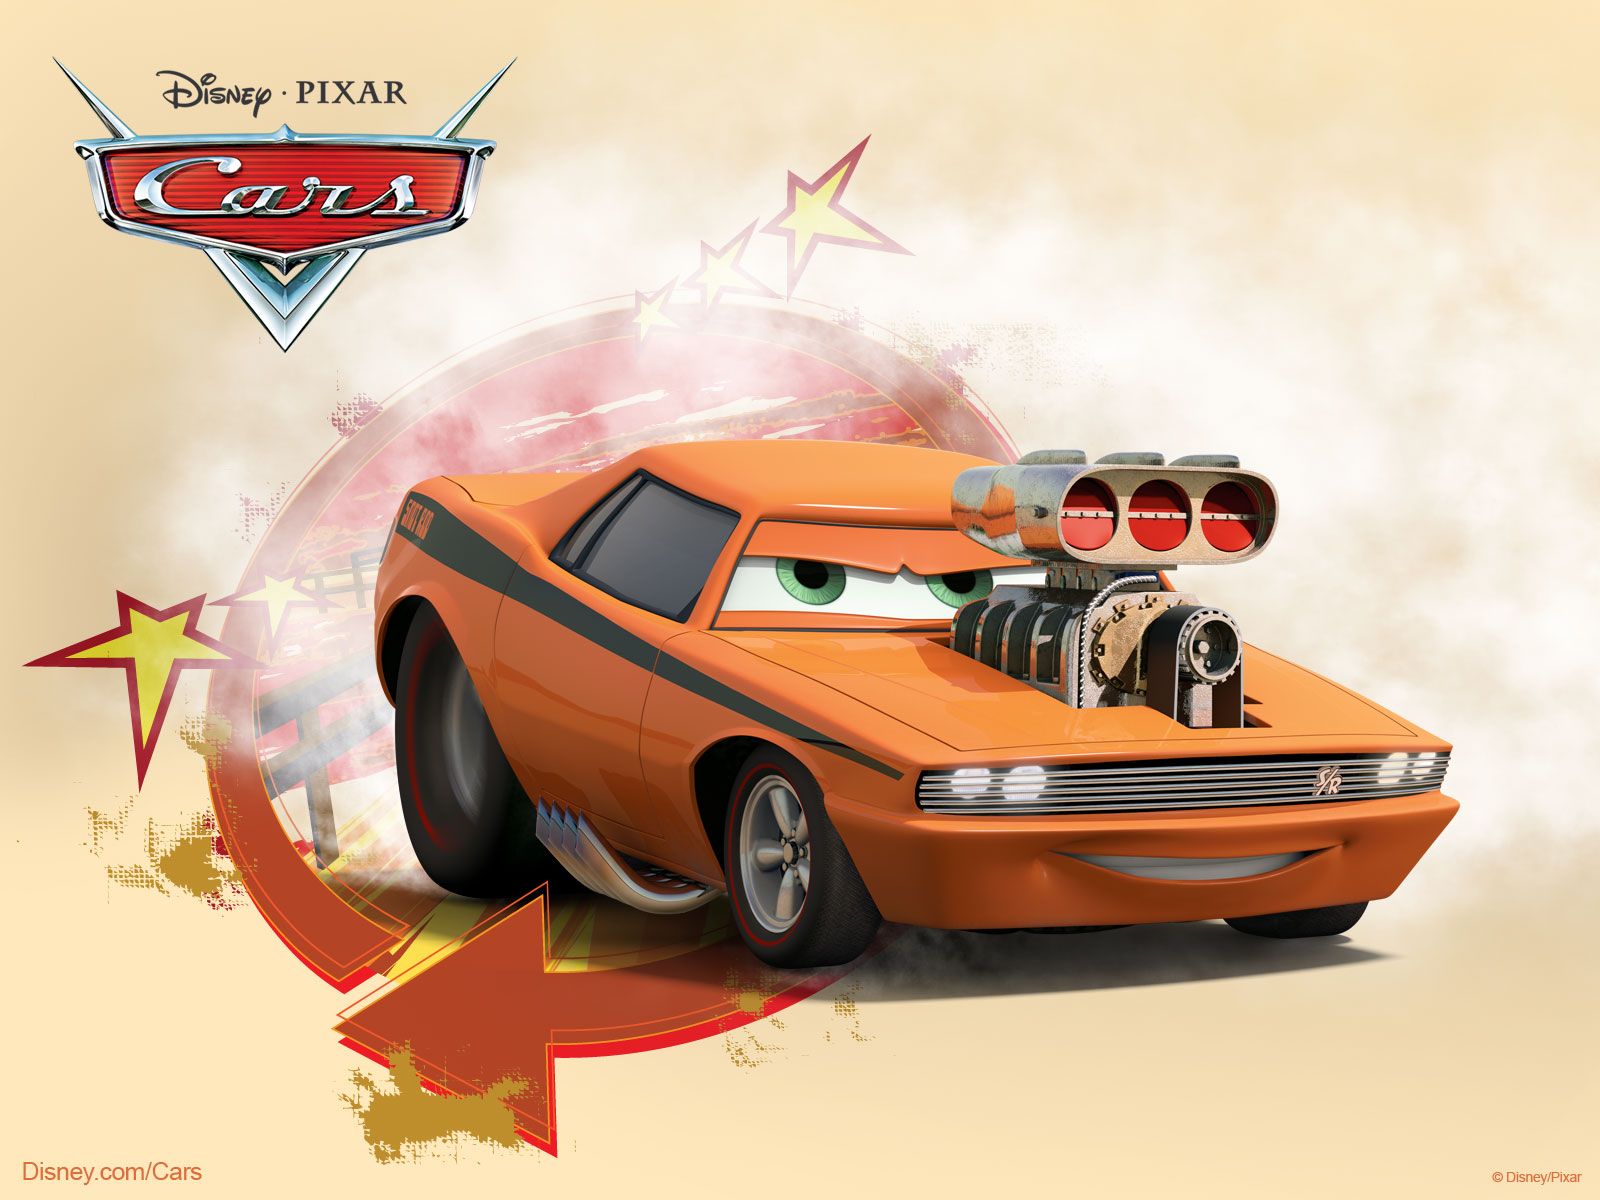 50+] Disney Cars Movie Wallpaper - WallpaperSafari